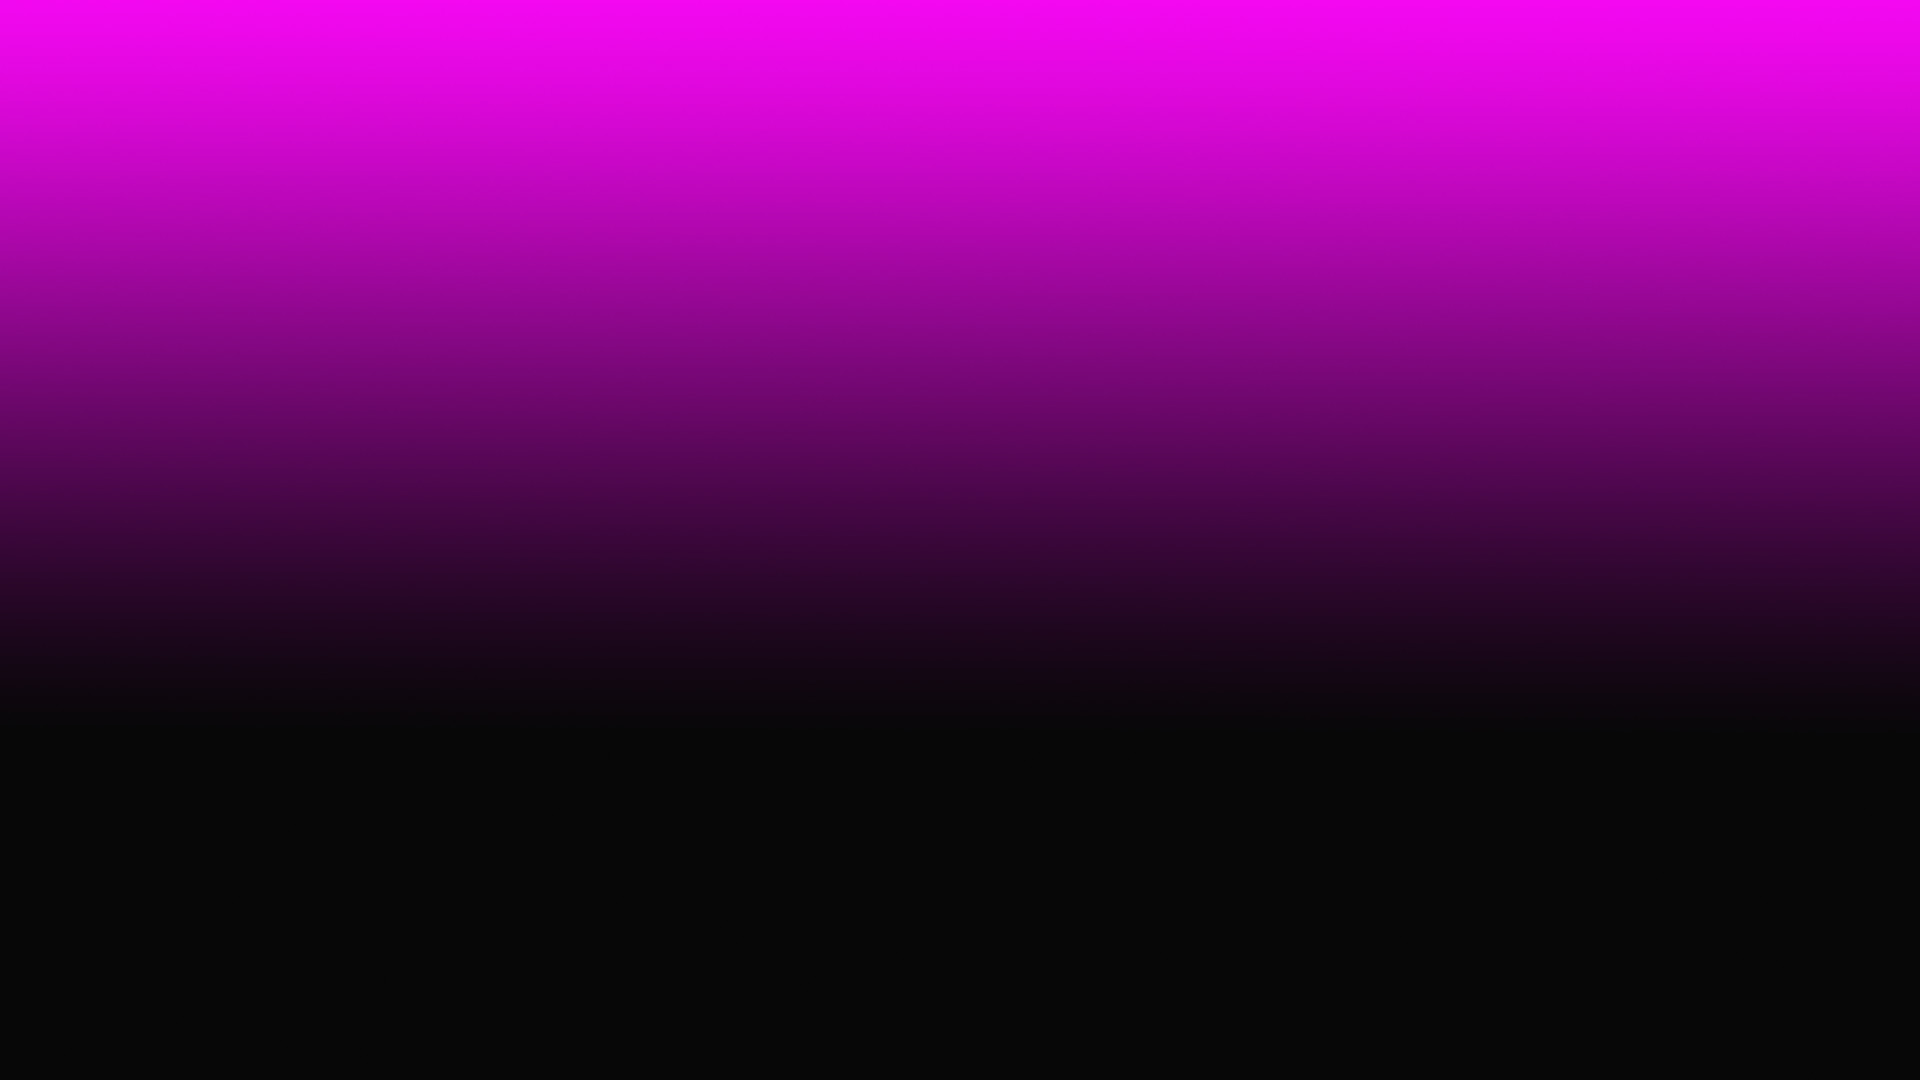 19201080 Pink and Black Gradient Desktop Wallpaper